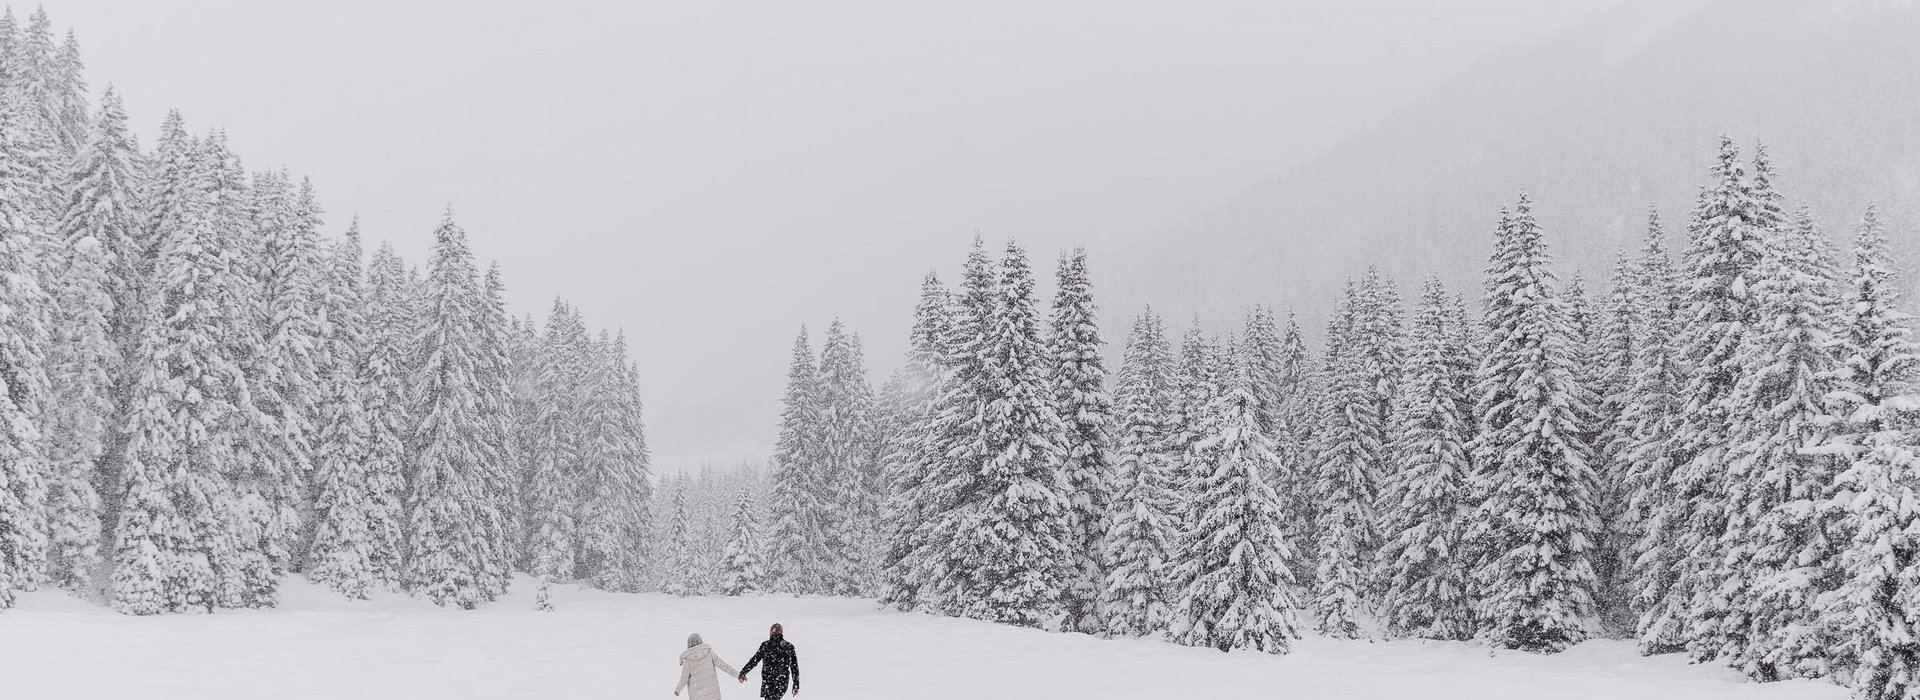 Paar beim Spaziergang in verschneiter Landschaft